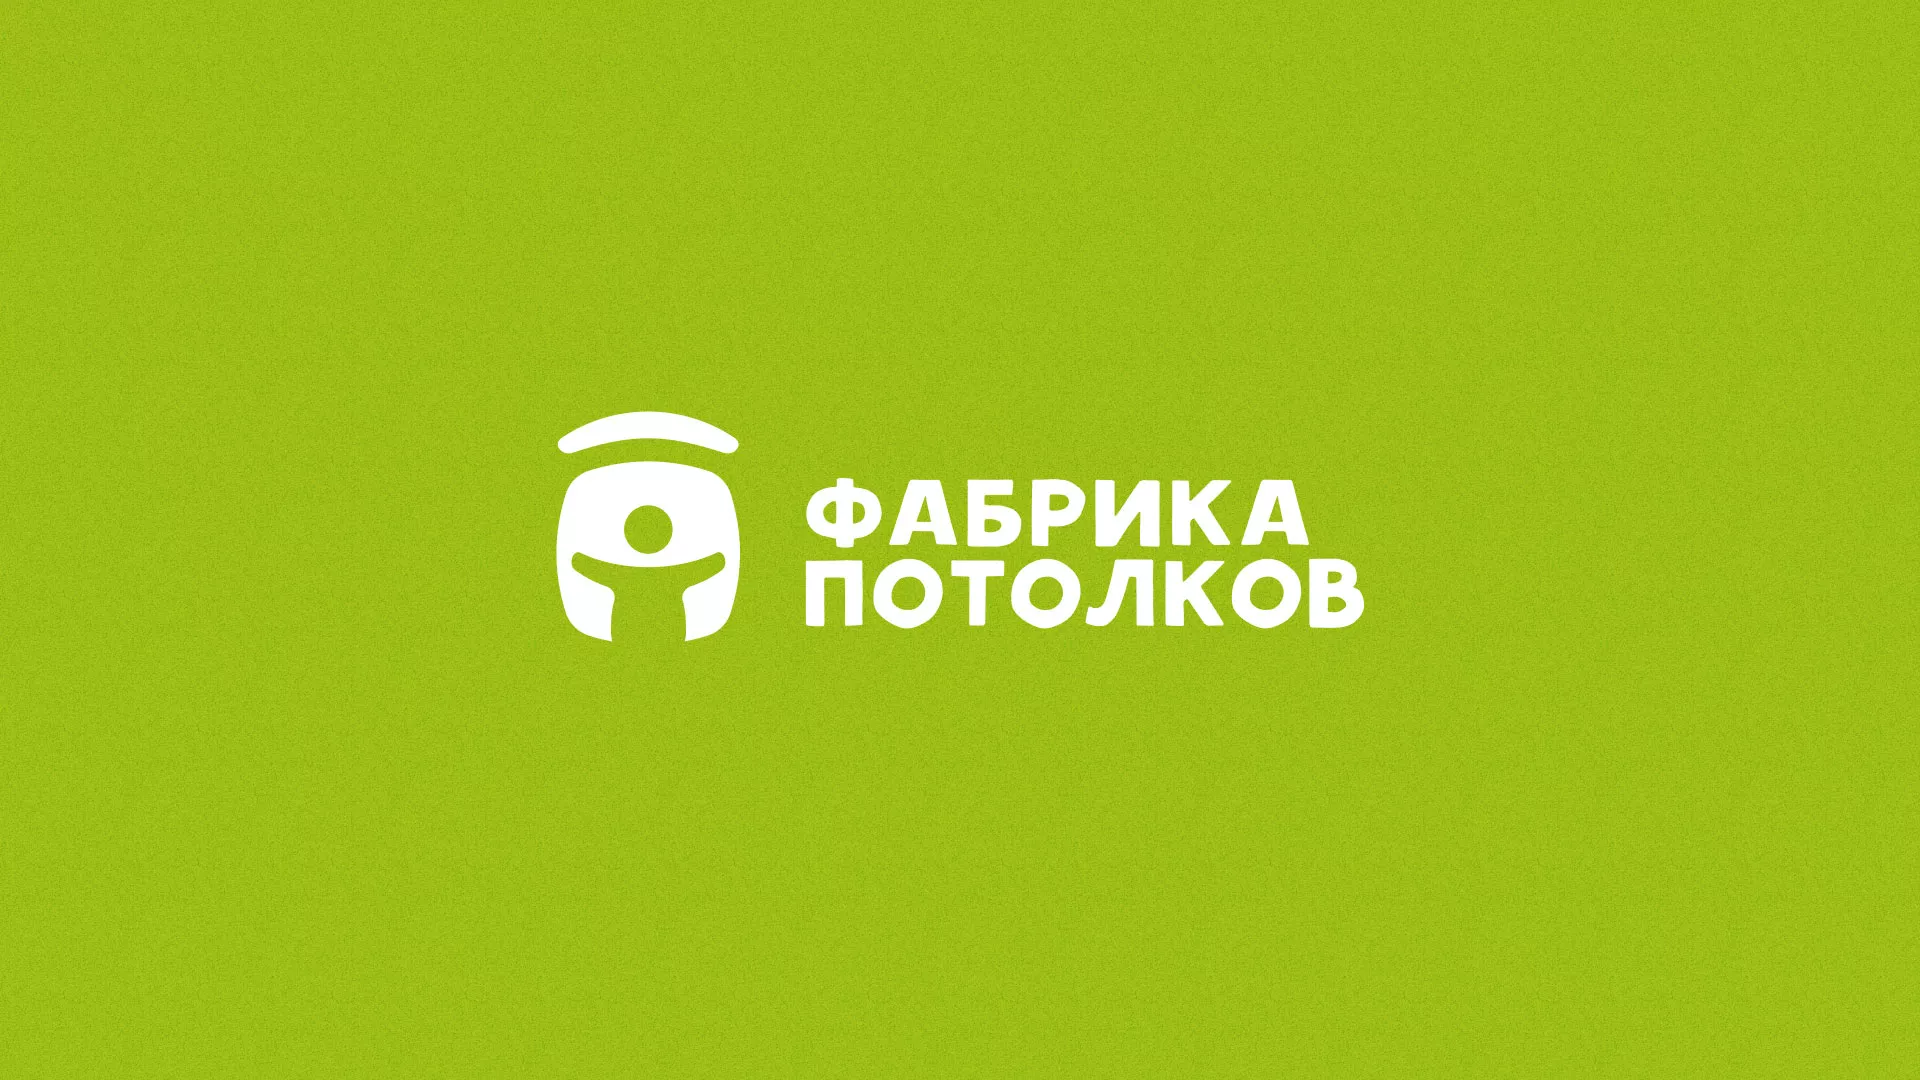 Разработка логотипа для производства натяжных потолков в Соколе